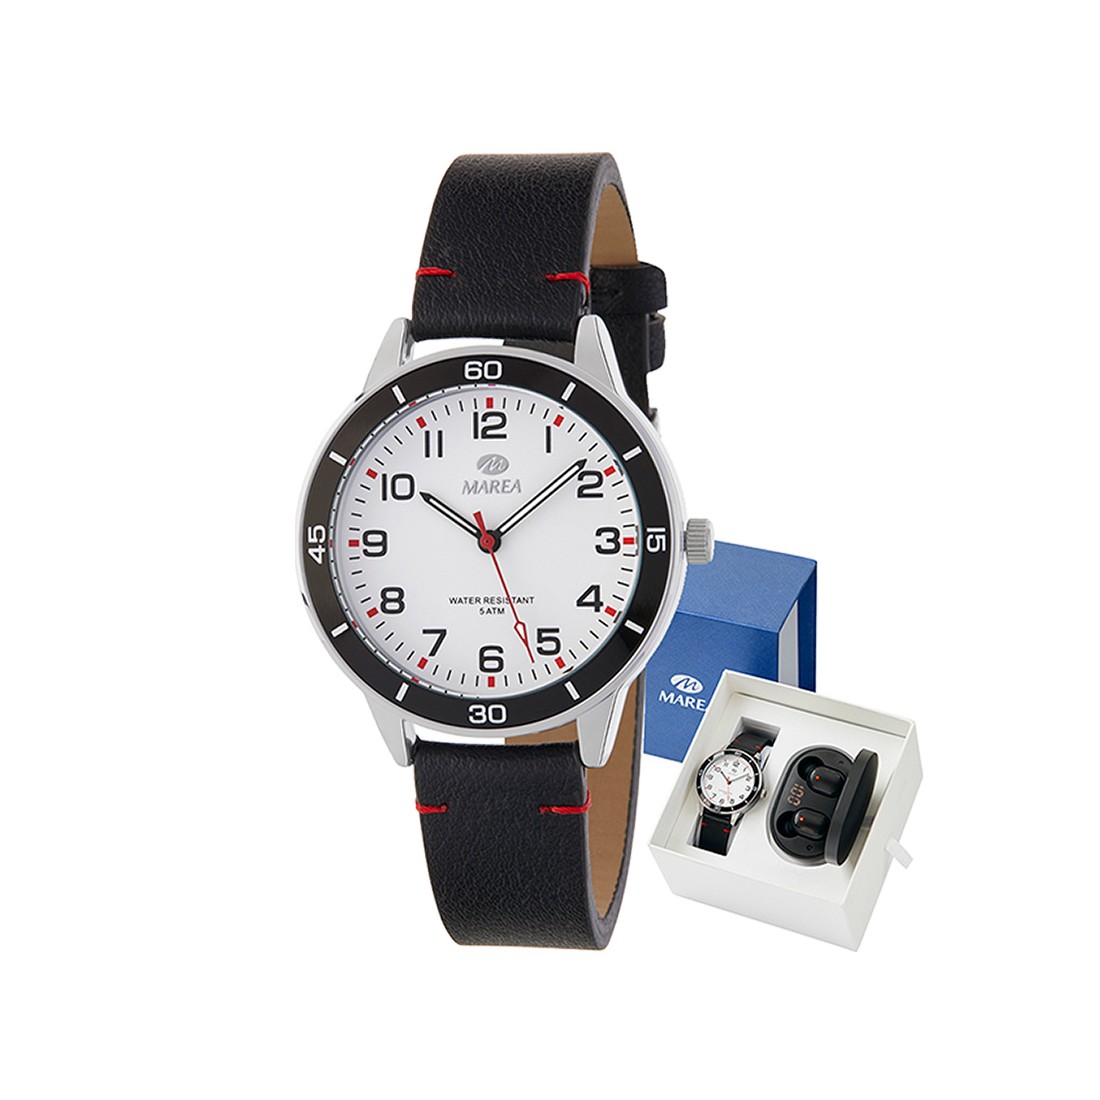 correas reloj marea – Compra correas reloj marea con envío gratis